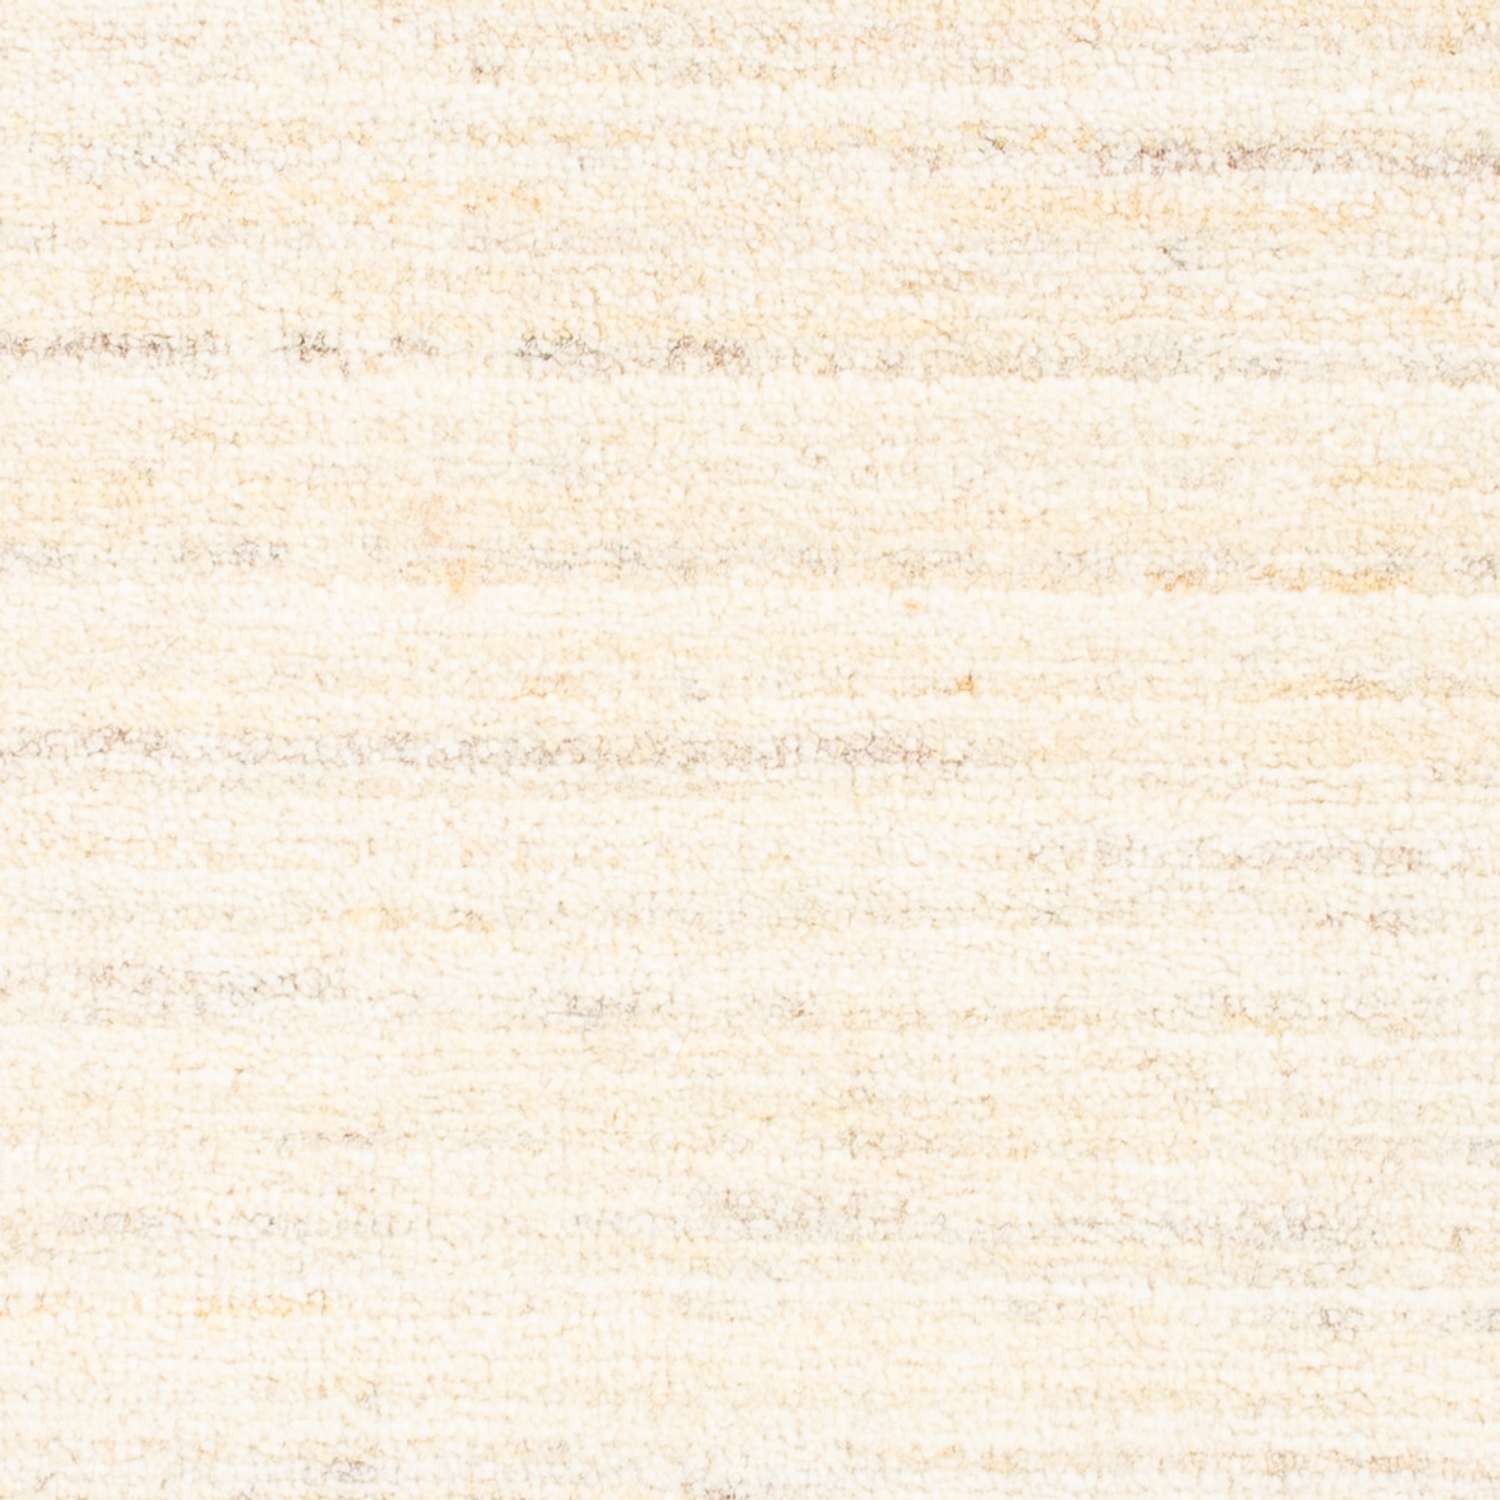 Gabbeh tapijt - Perzisch - 85 x 60 cm - beige